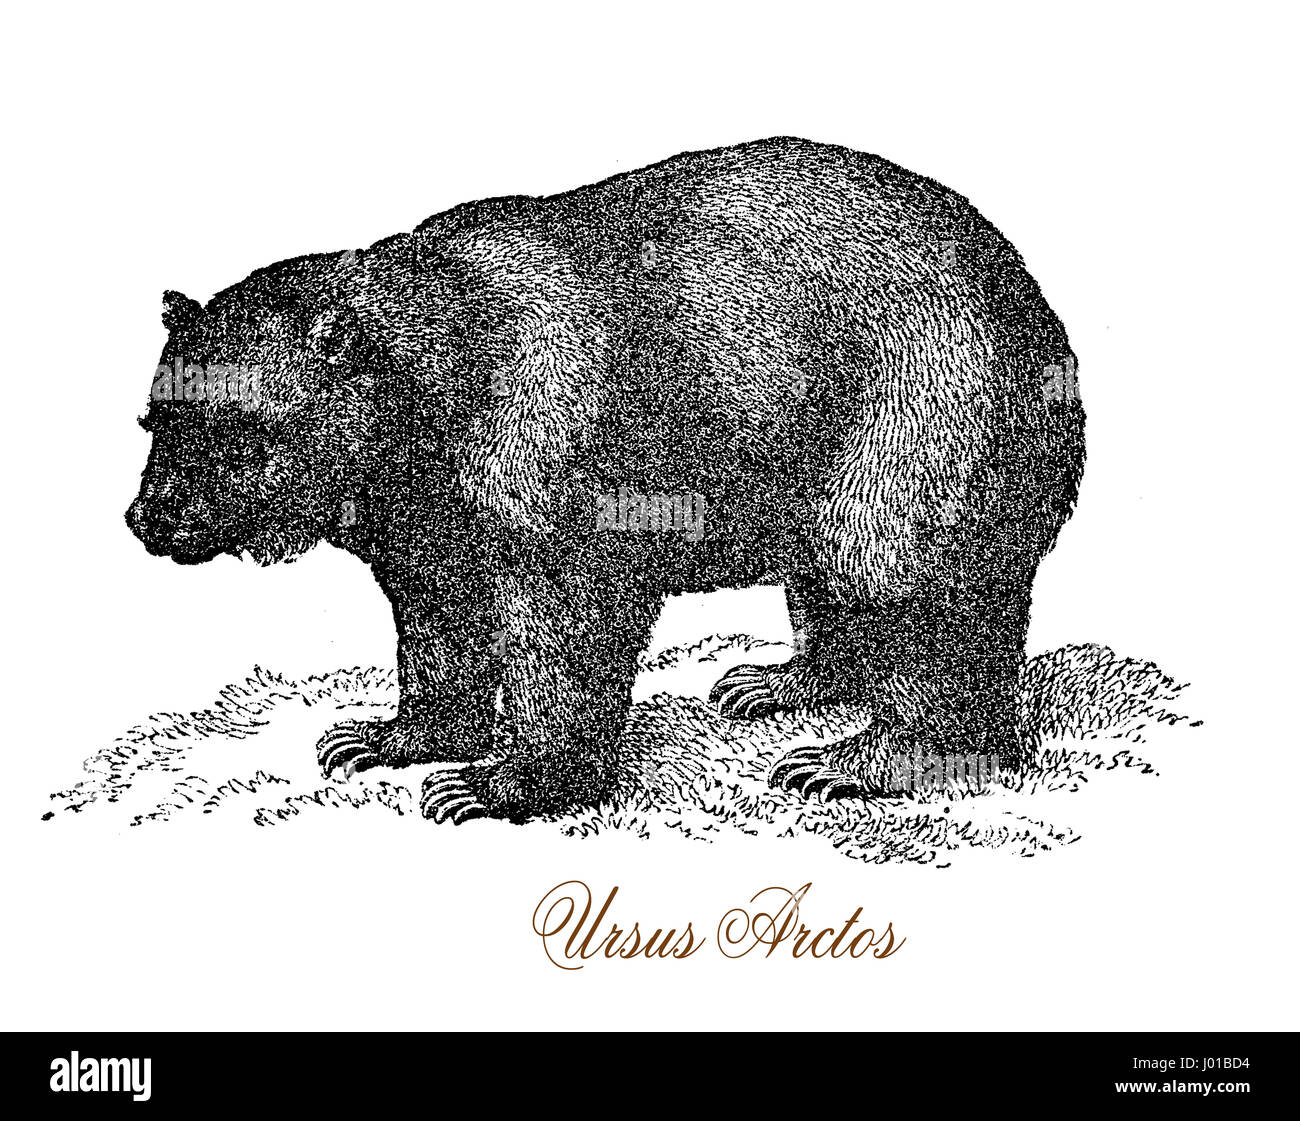 L'ours grizzli (Ursus arctos ssp.) est une sous-espèce de gros ours brun qui habite l'Amérique du Nord. Banque D'Images